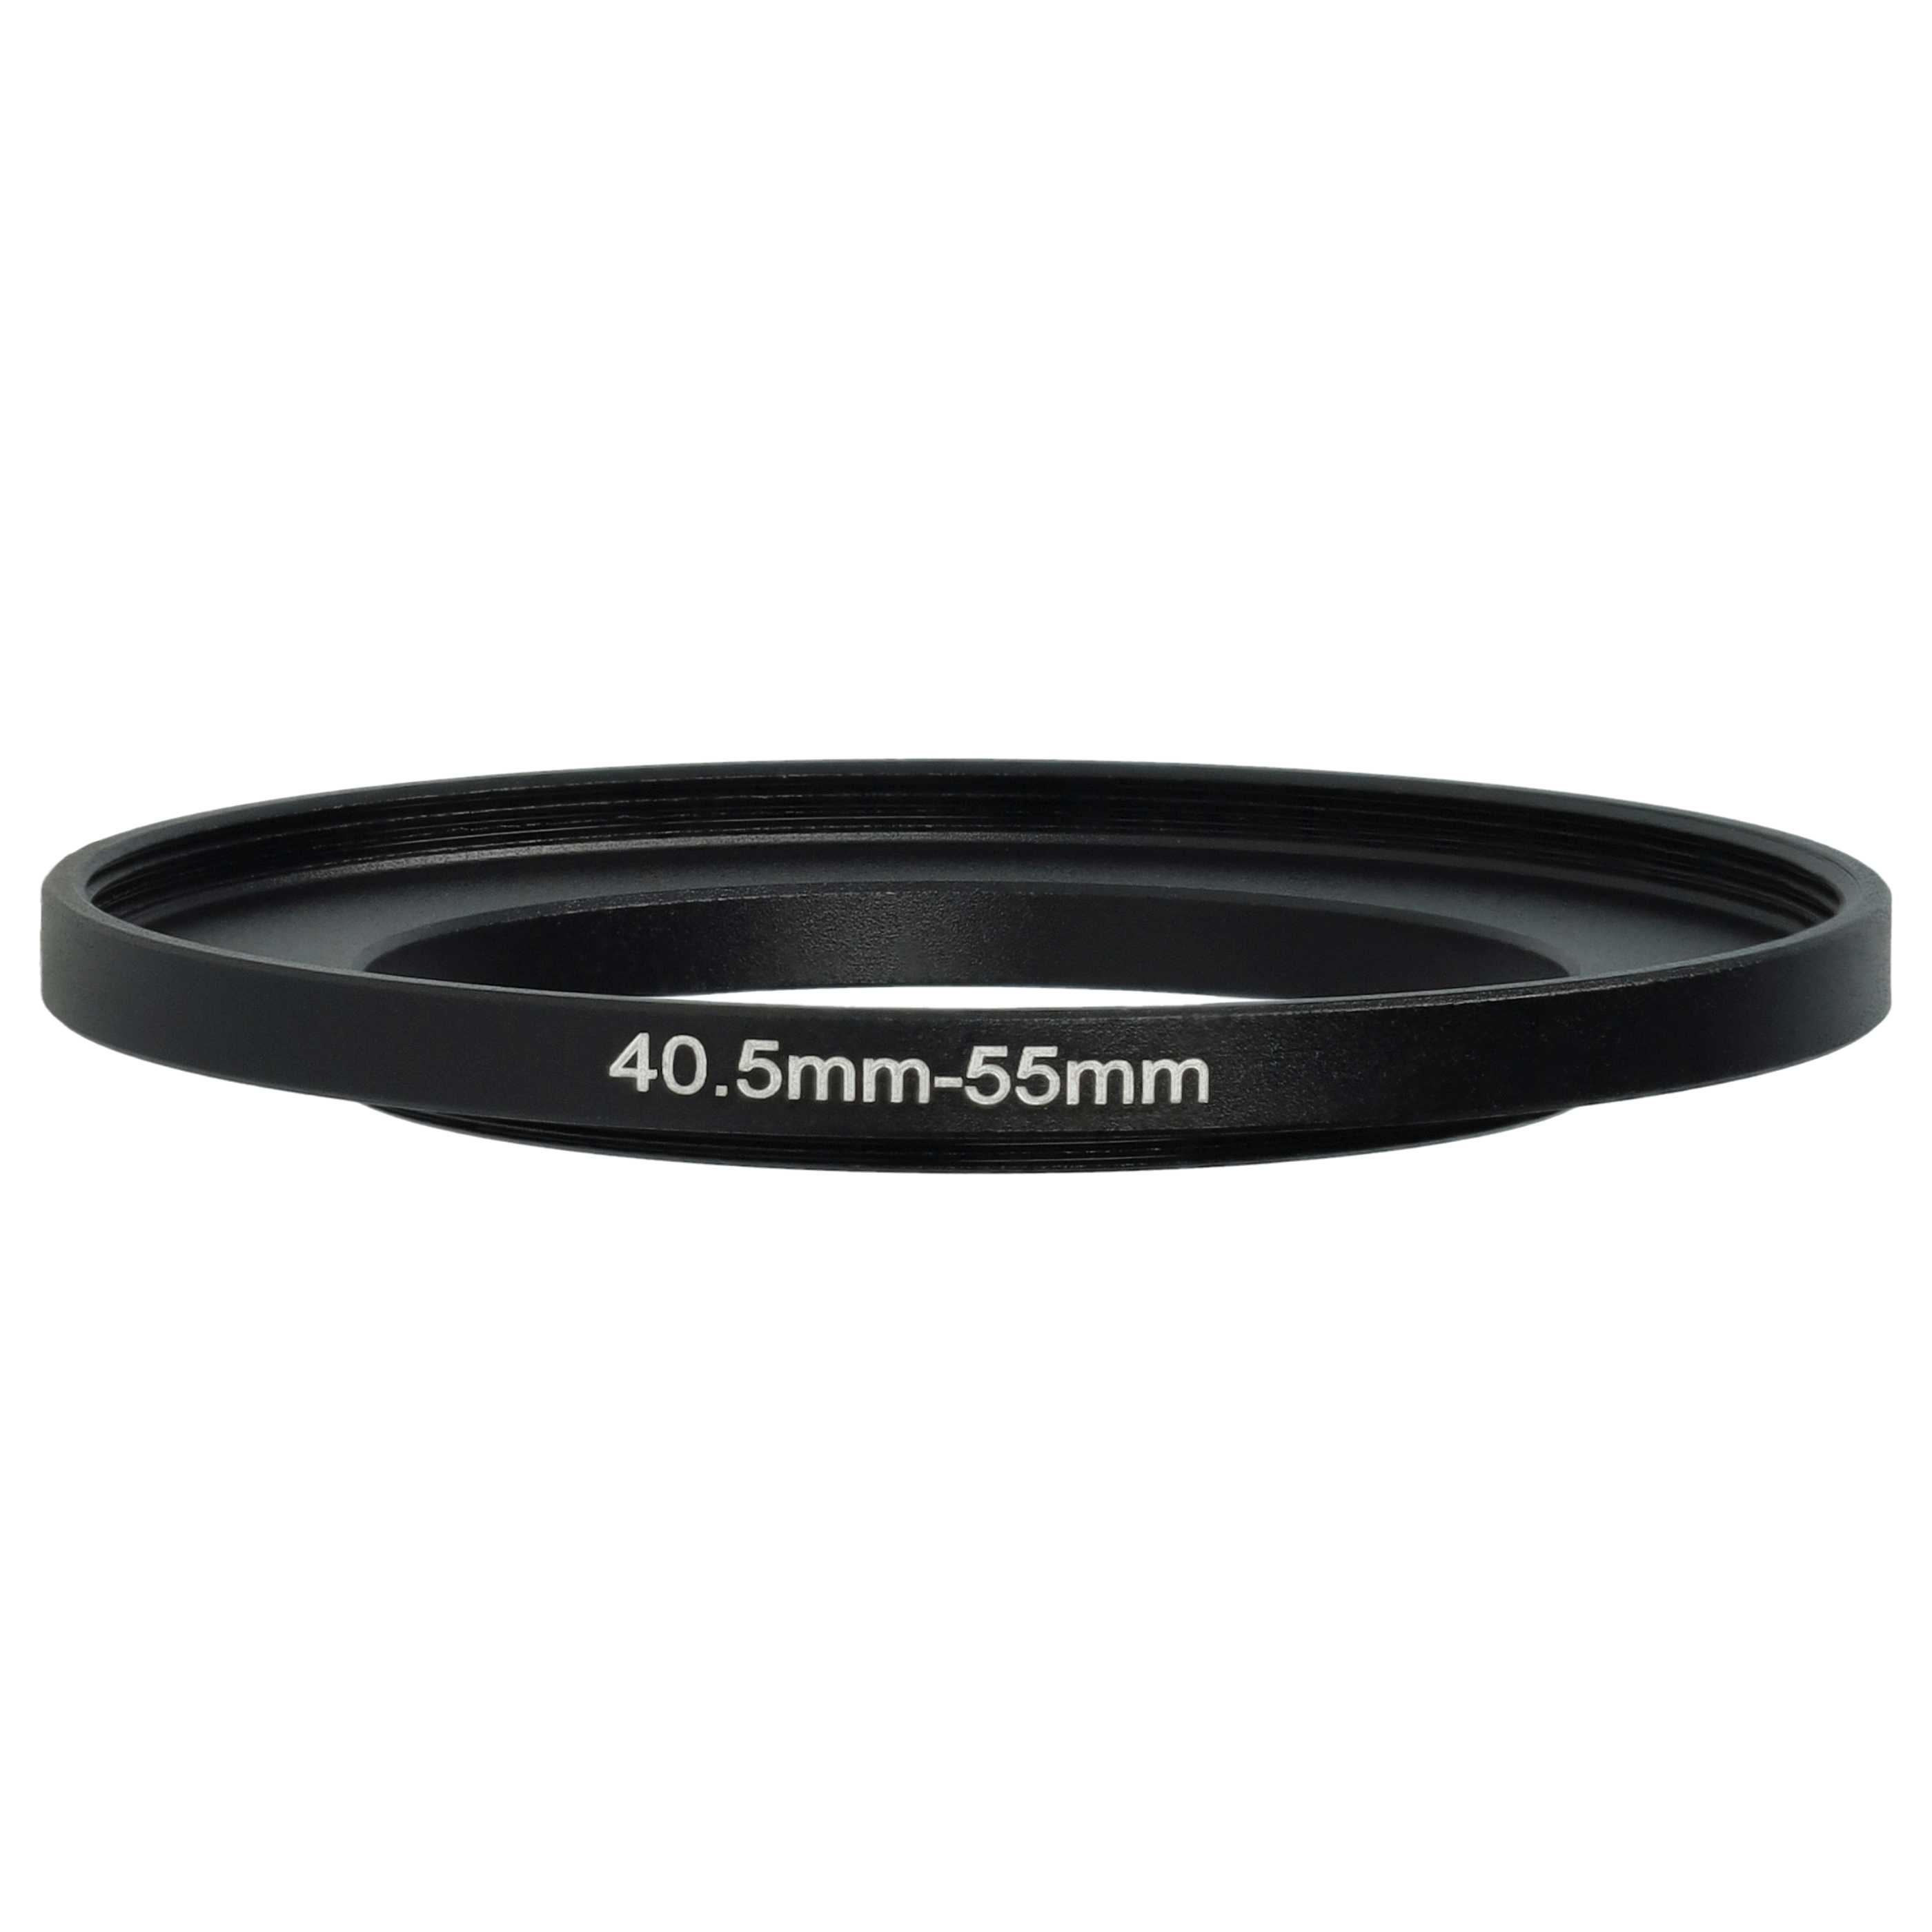 Bague Step-up 40,5 mm vers 55 mm pour divers objectifs d'appareil photo - Adaptateur filtre